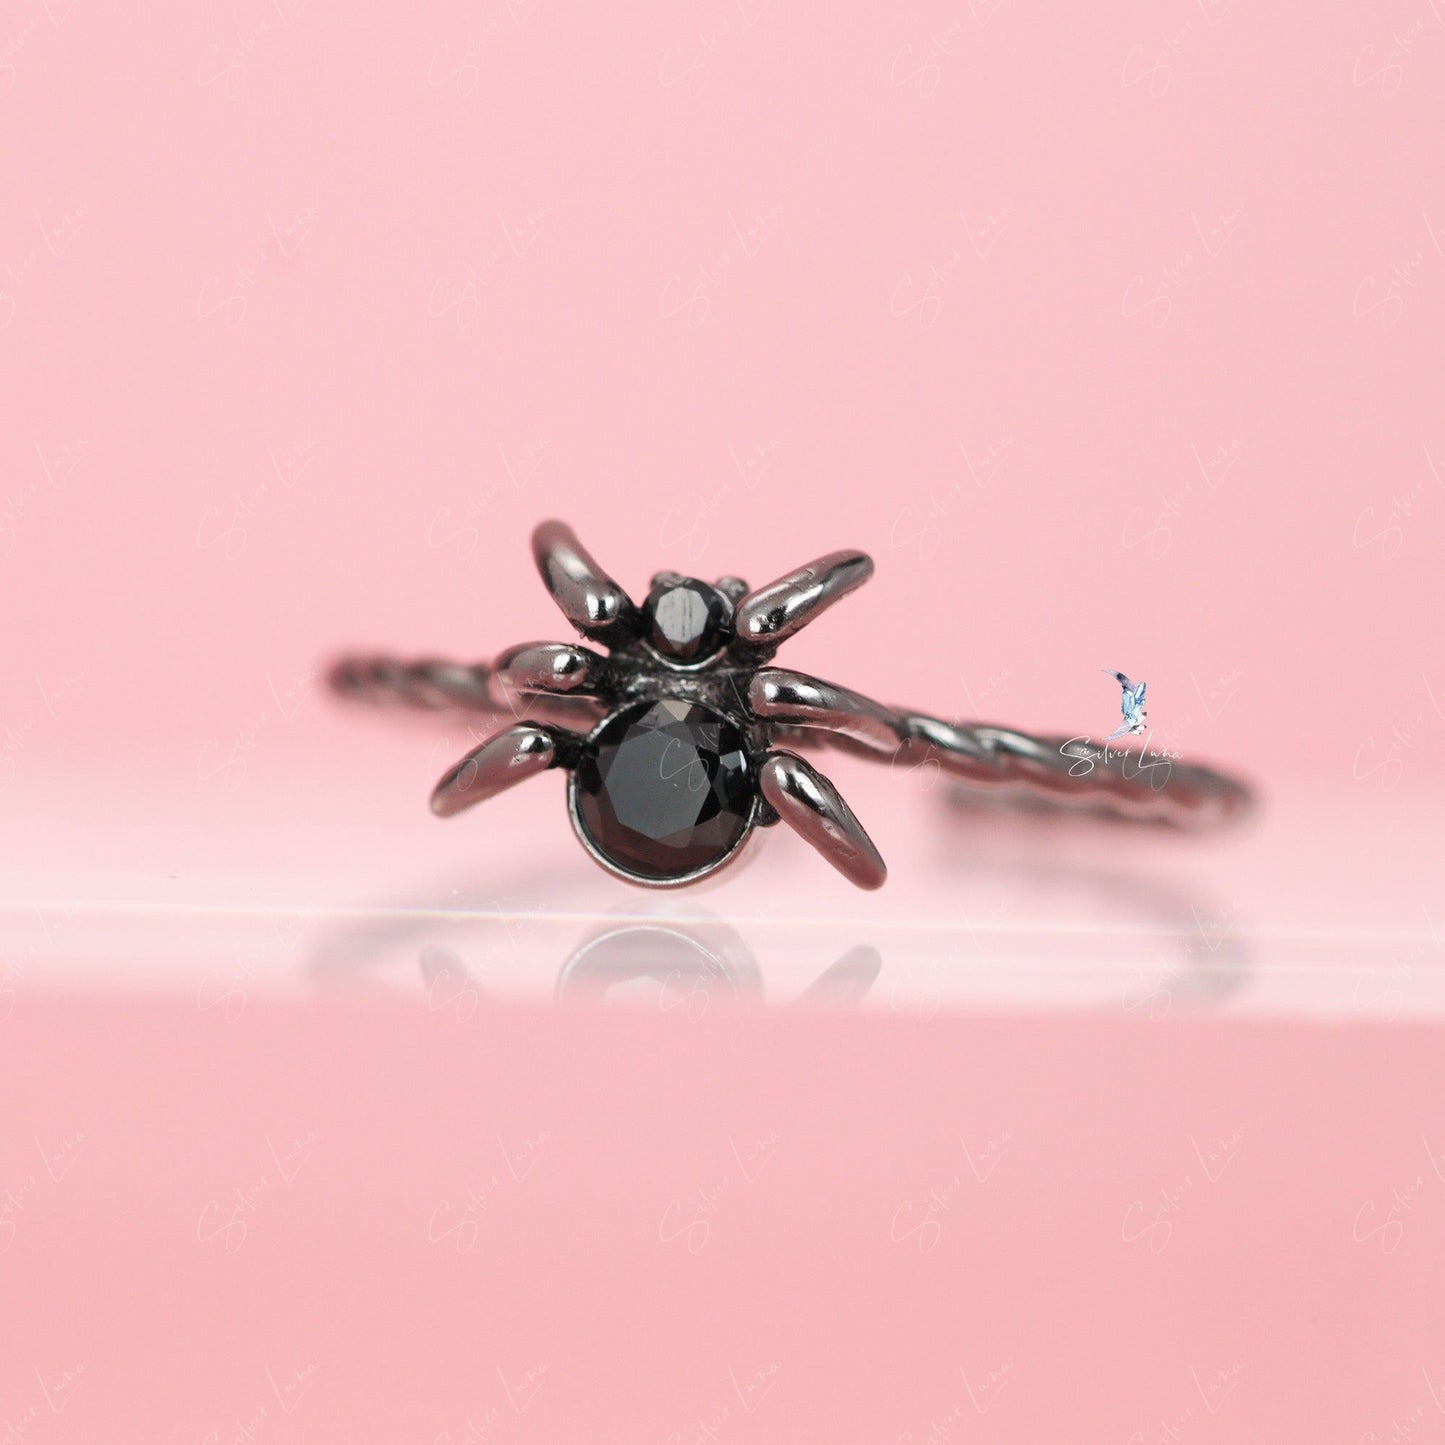 Adjustable black spider ring